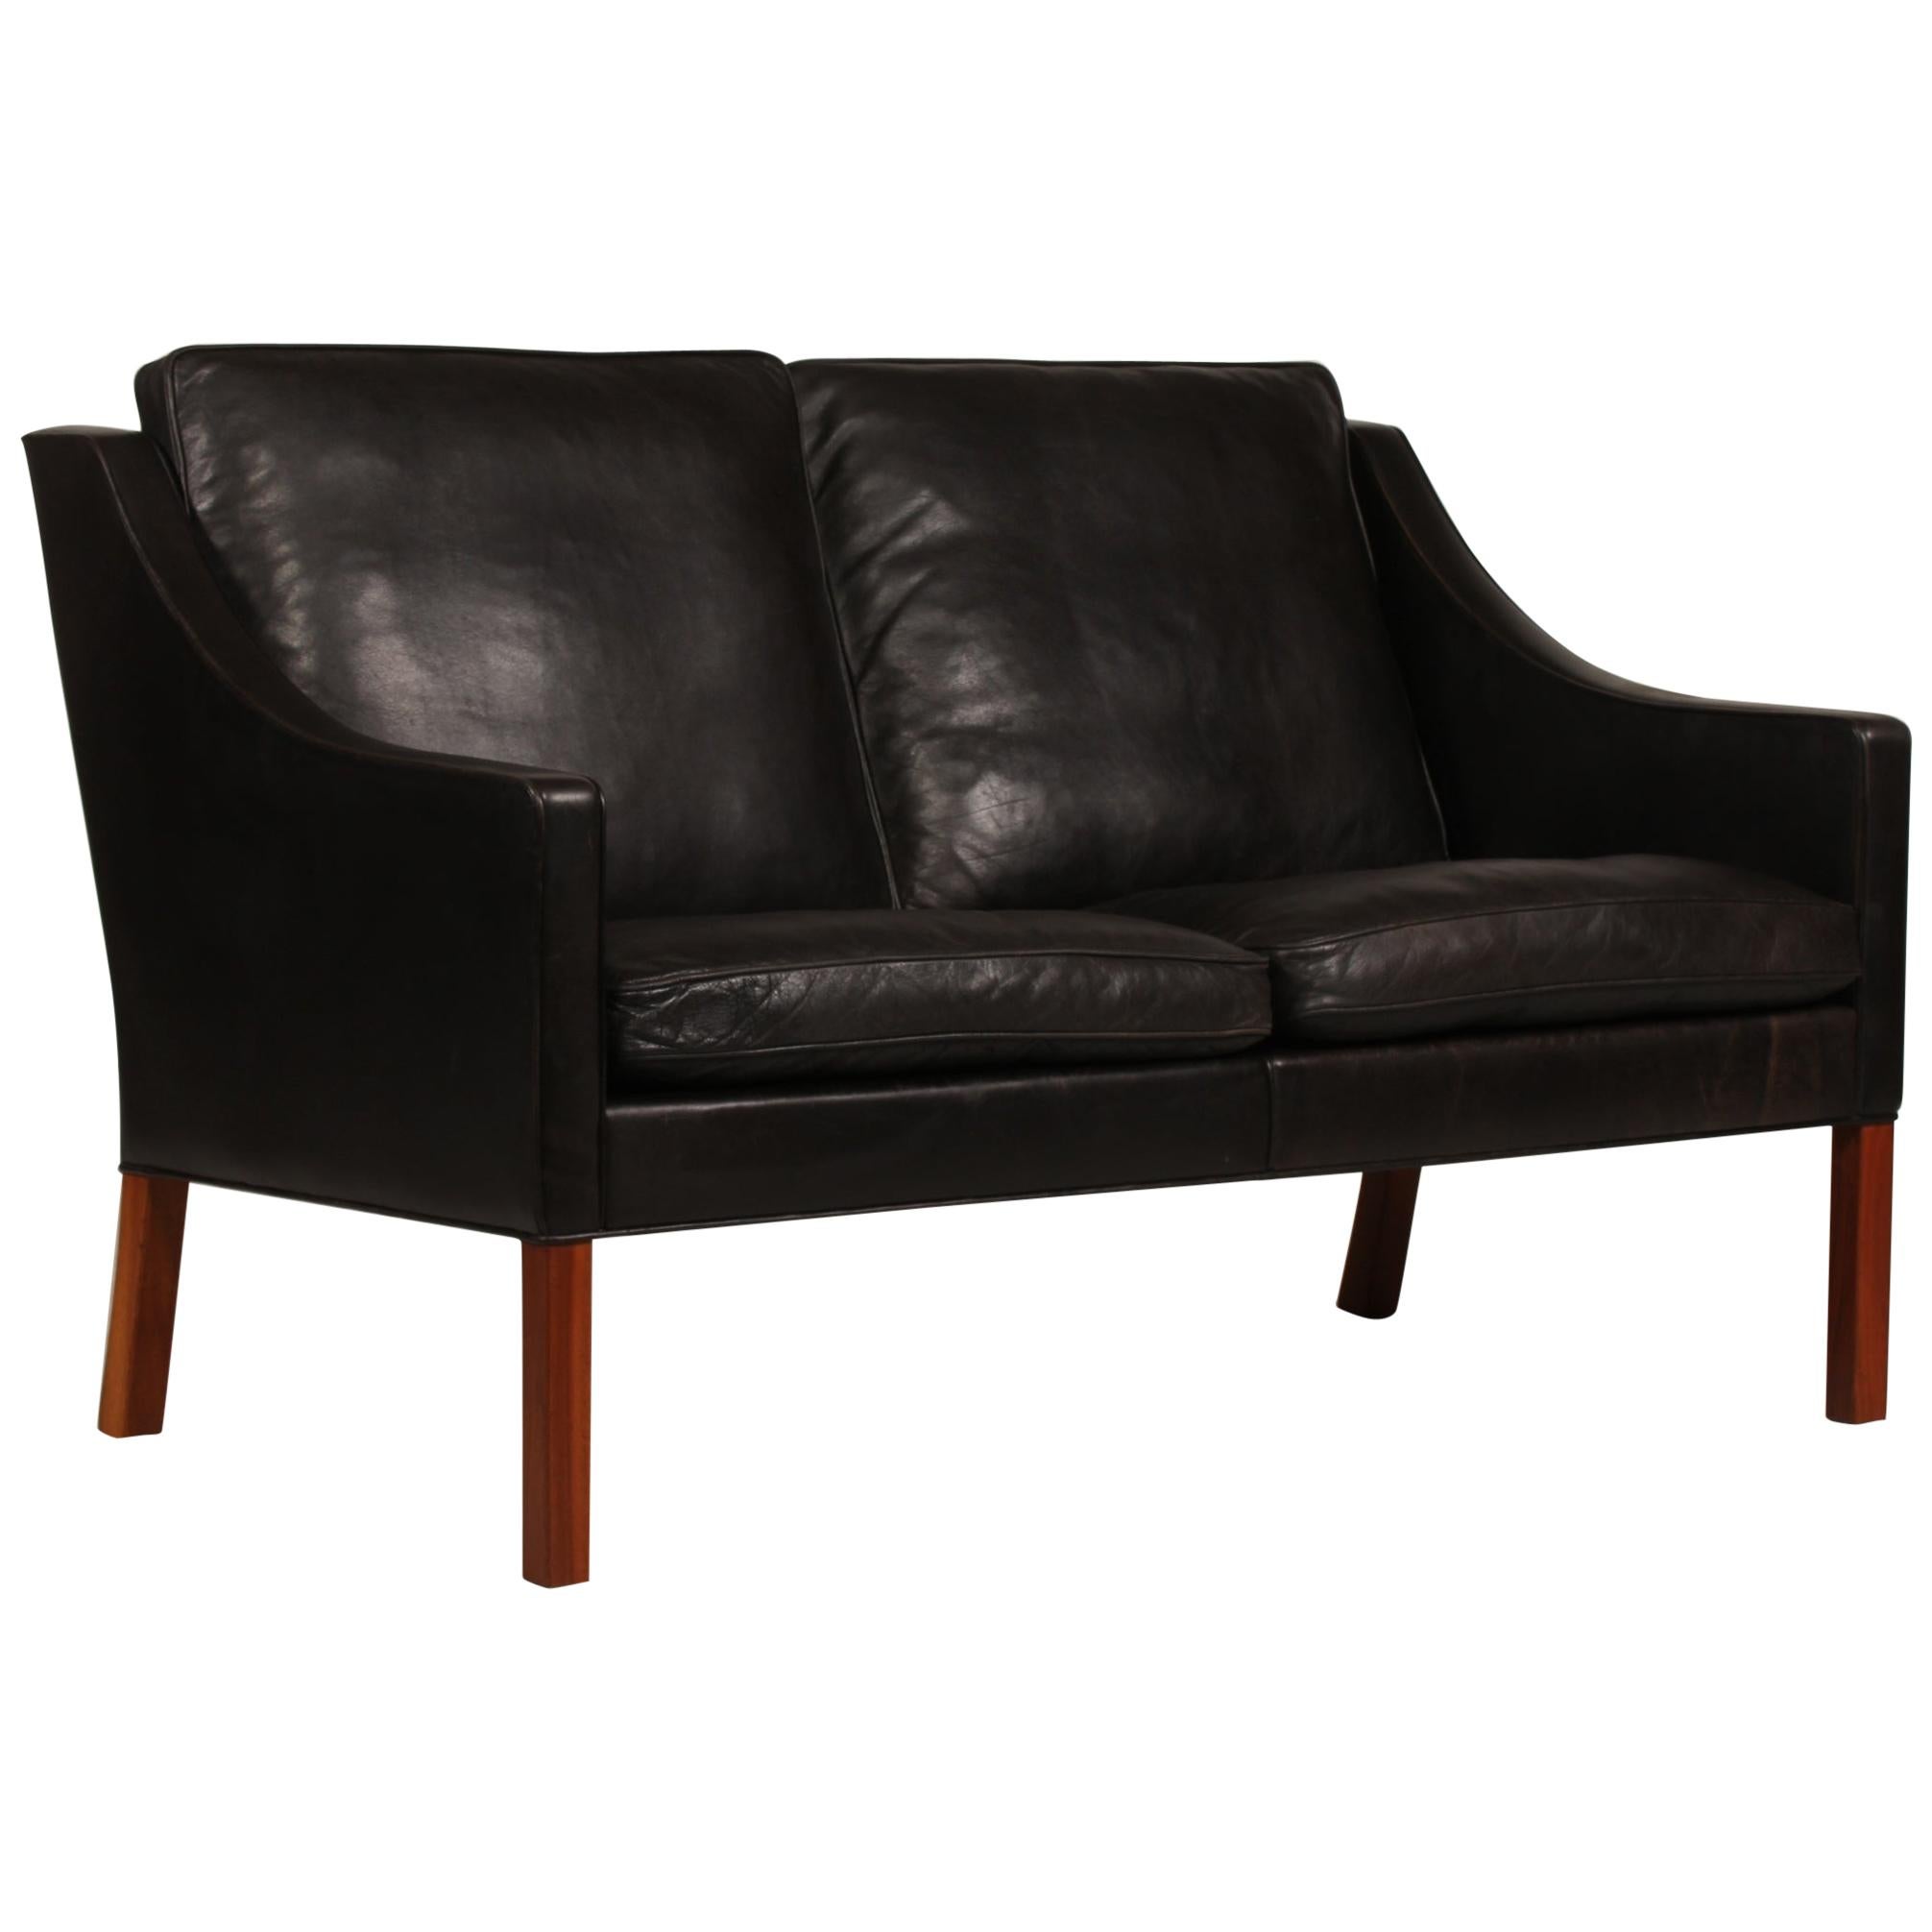 Børge Mogensen Sofa 2208 mit schwarzem Leder von Fredericia Furniture, Dänemark